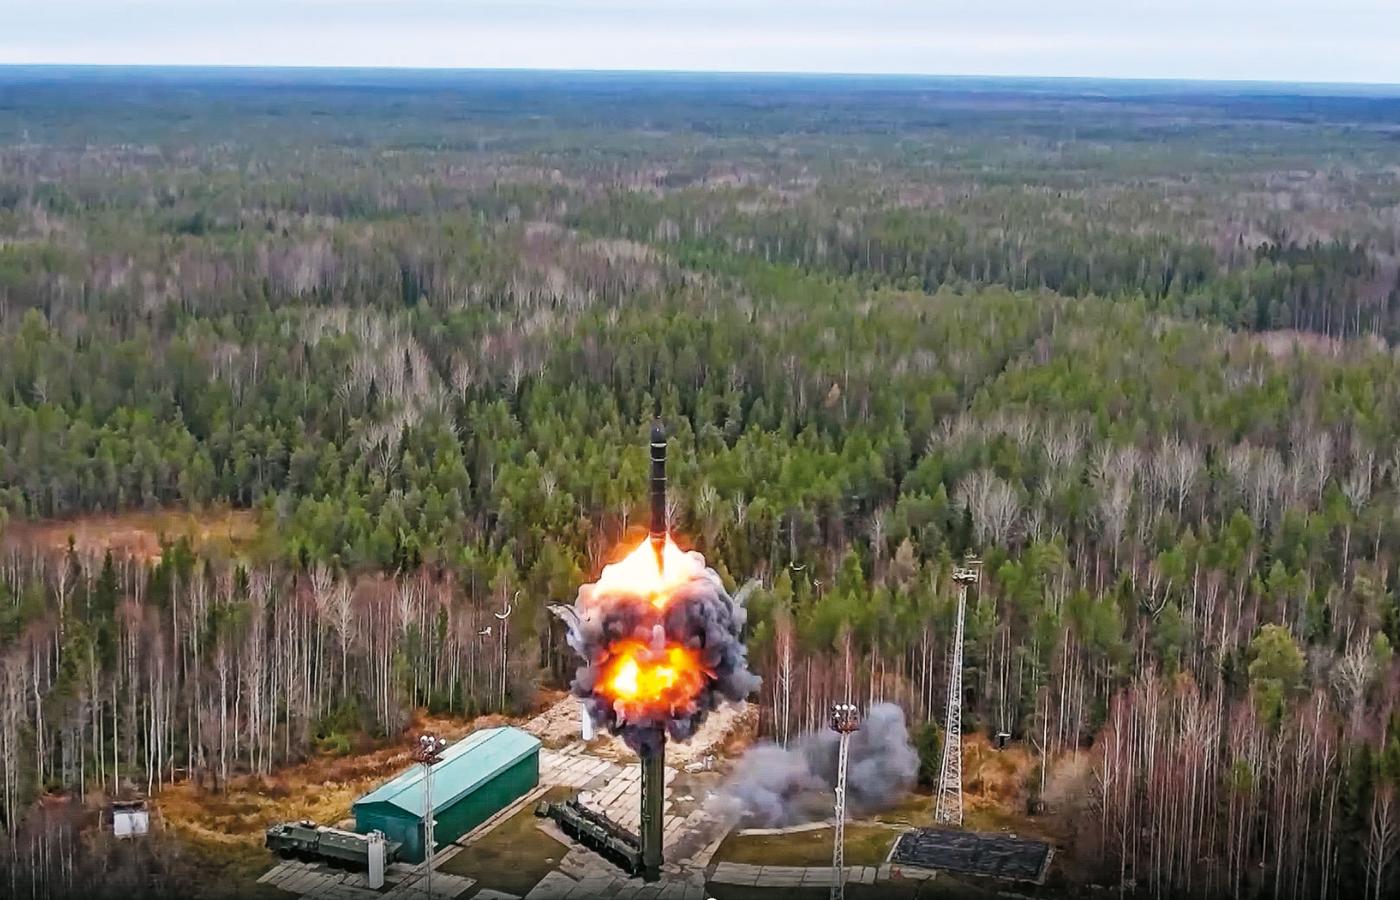 Międzykontynentalna rakieta balistyczna Jars
odpalona z kosmodromu w rosyjskim Plesiecku.